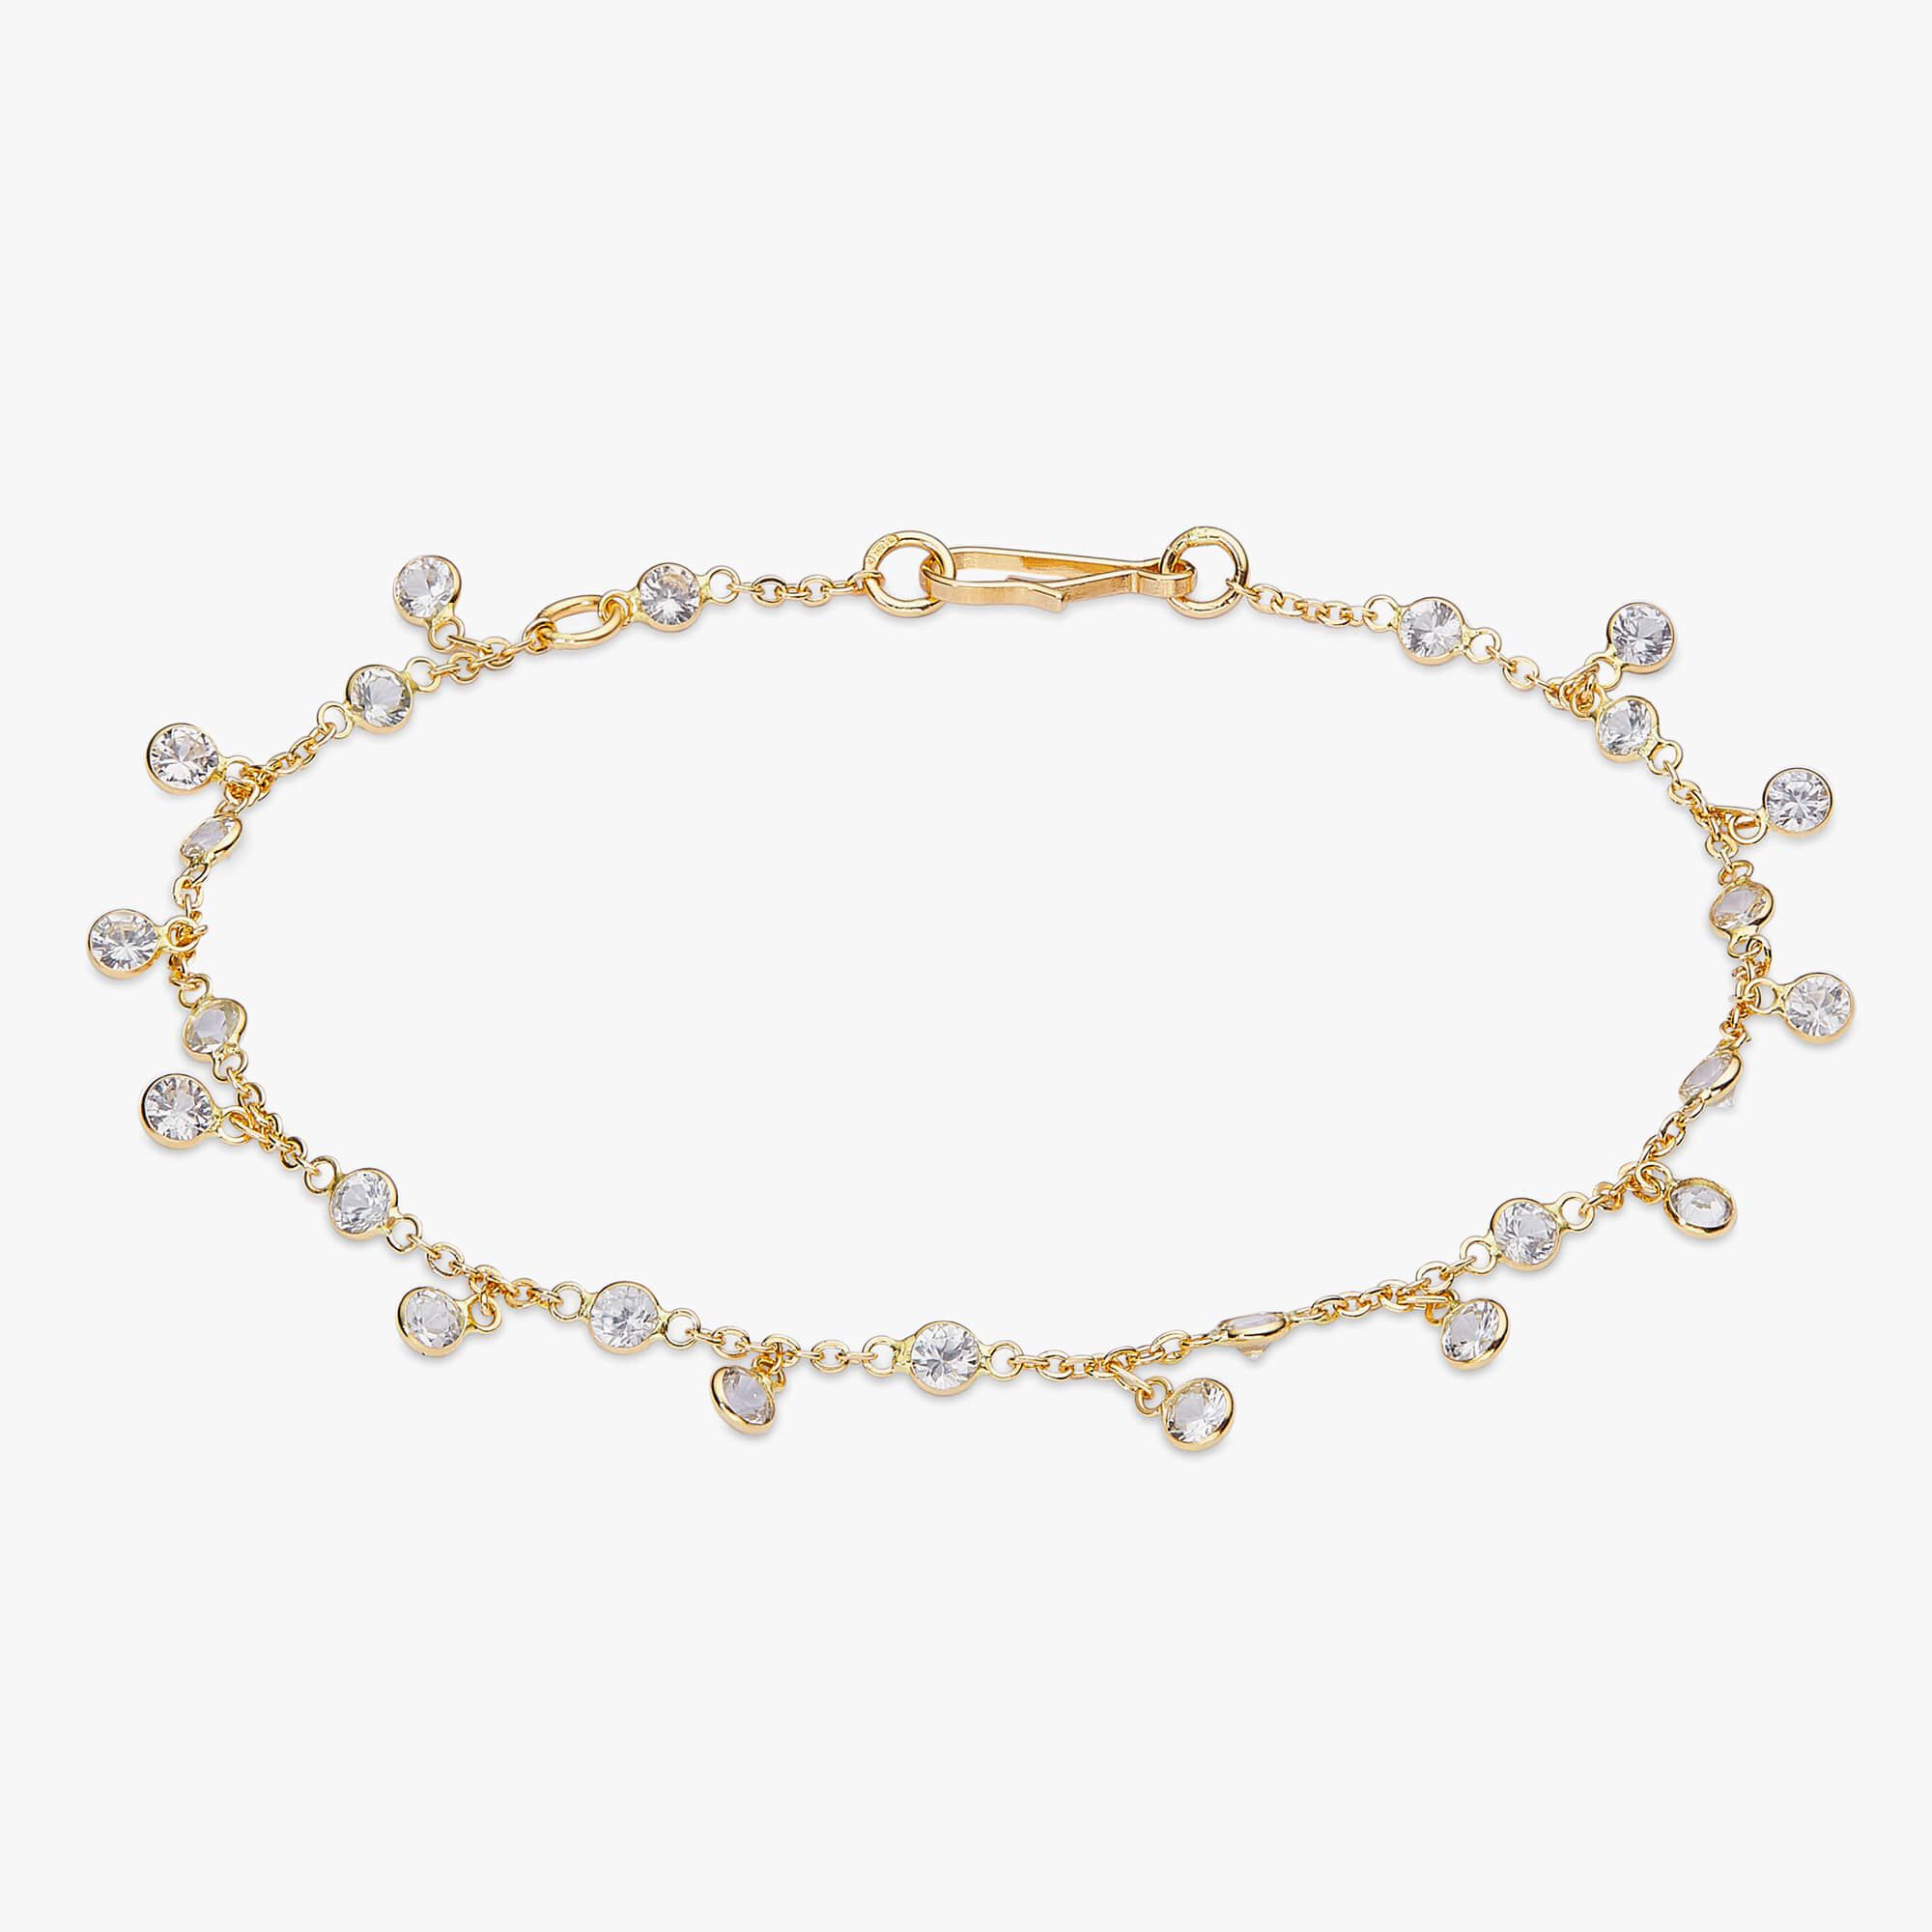 A001823 - 18K diamond rose gold bracelet